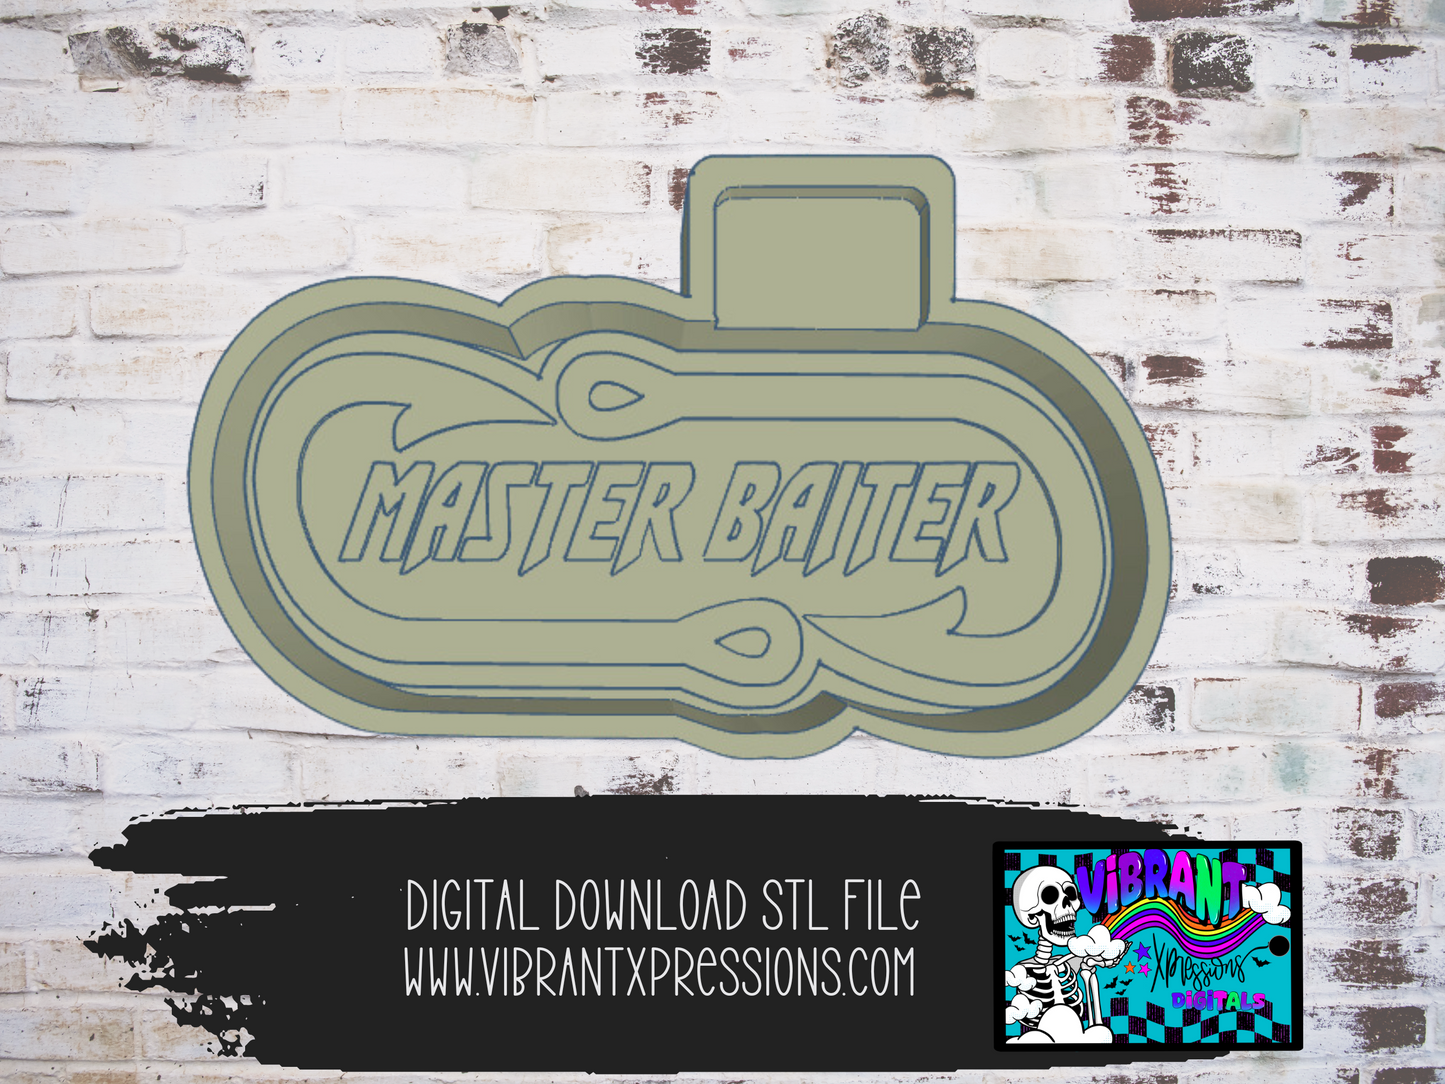 Master Baiter Mold Maker STL File